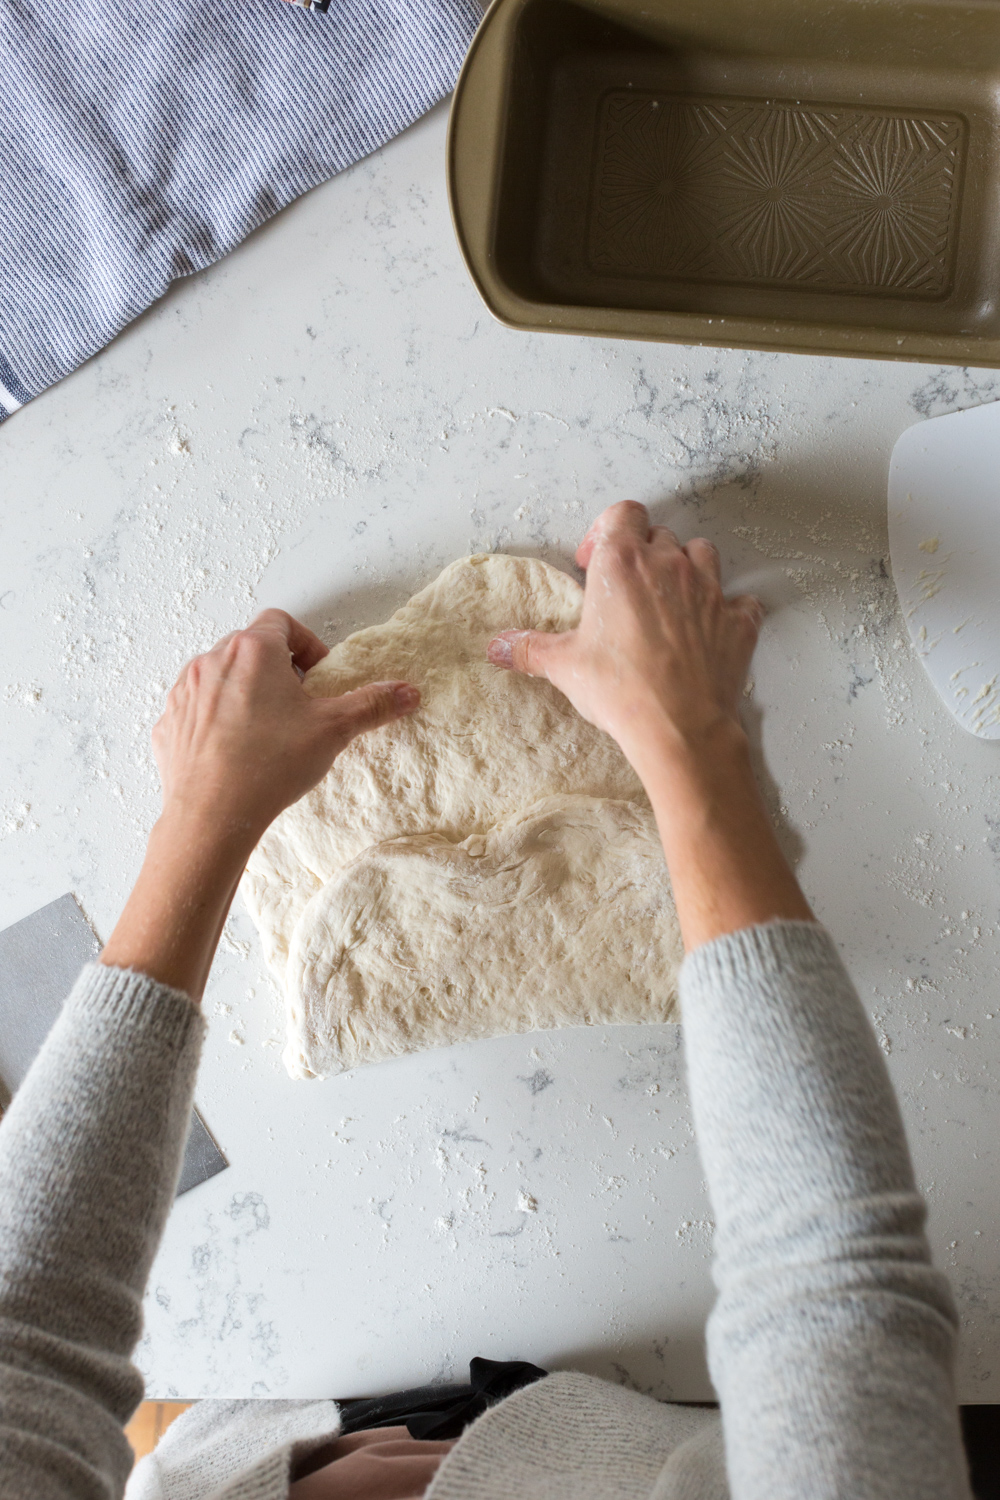 Folding Best Basic White Bread dough